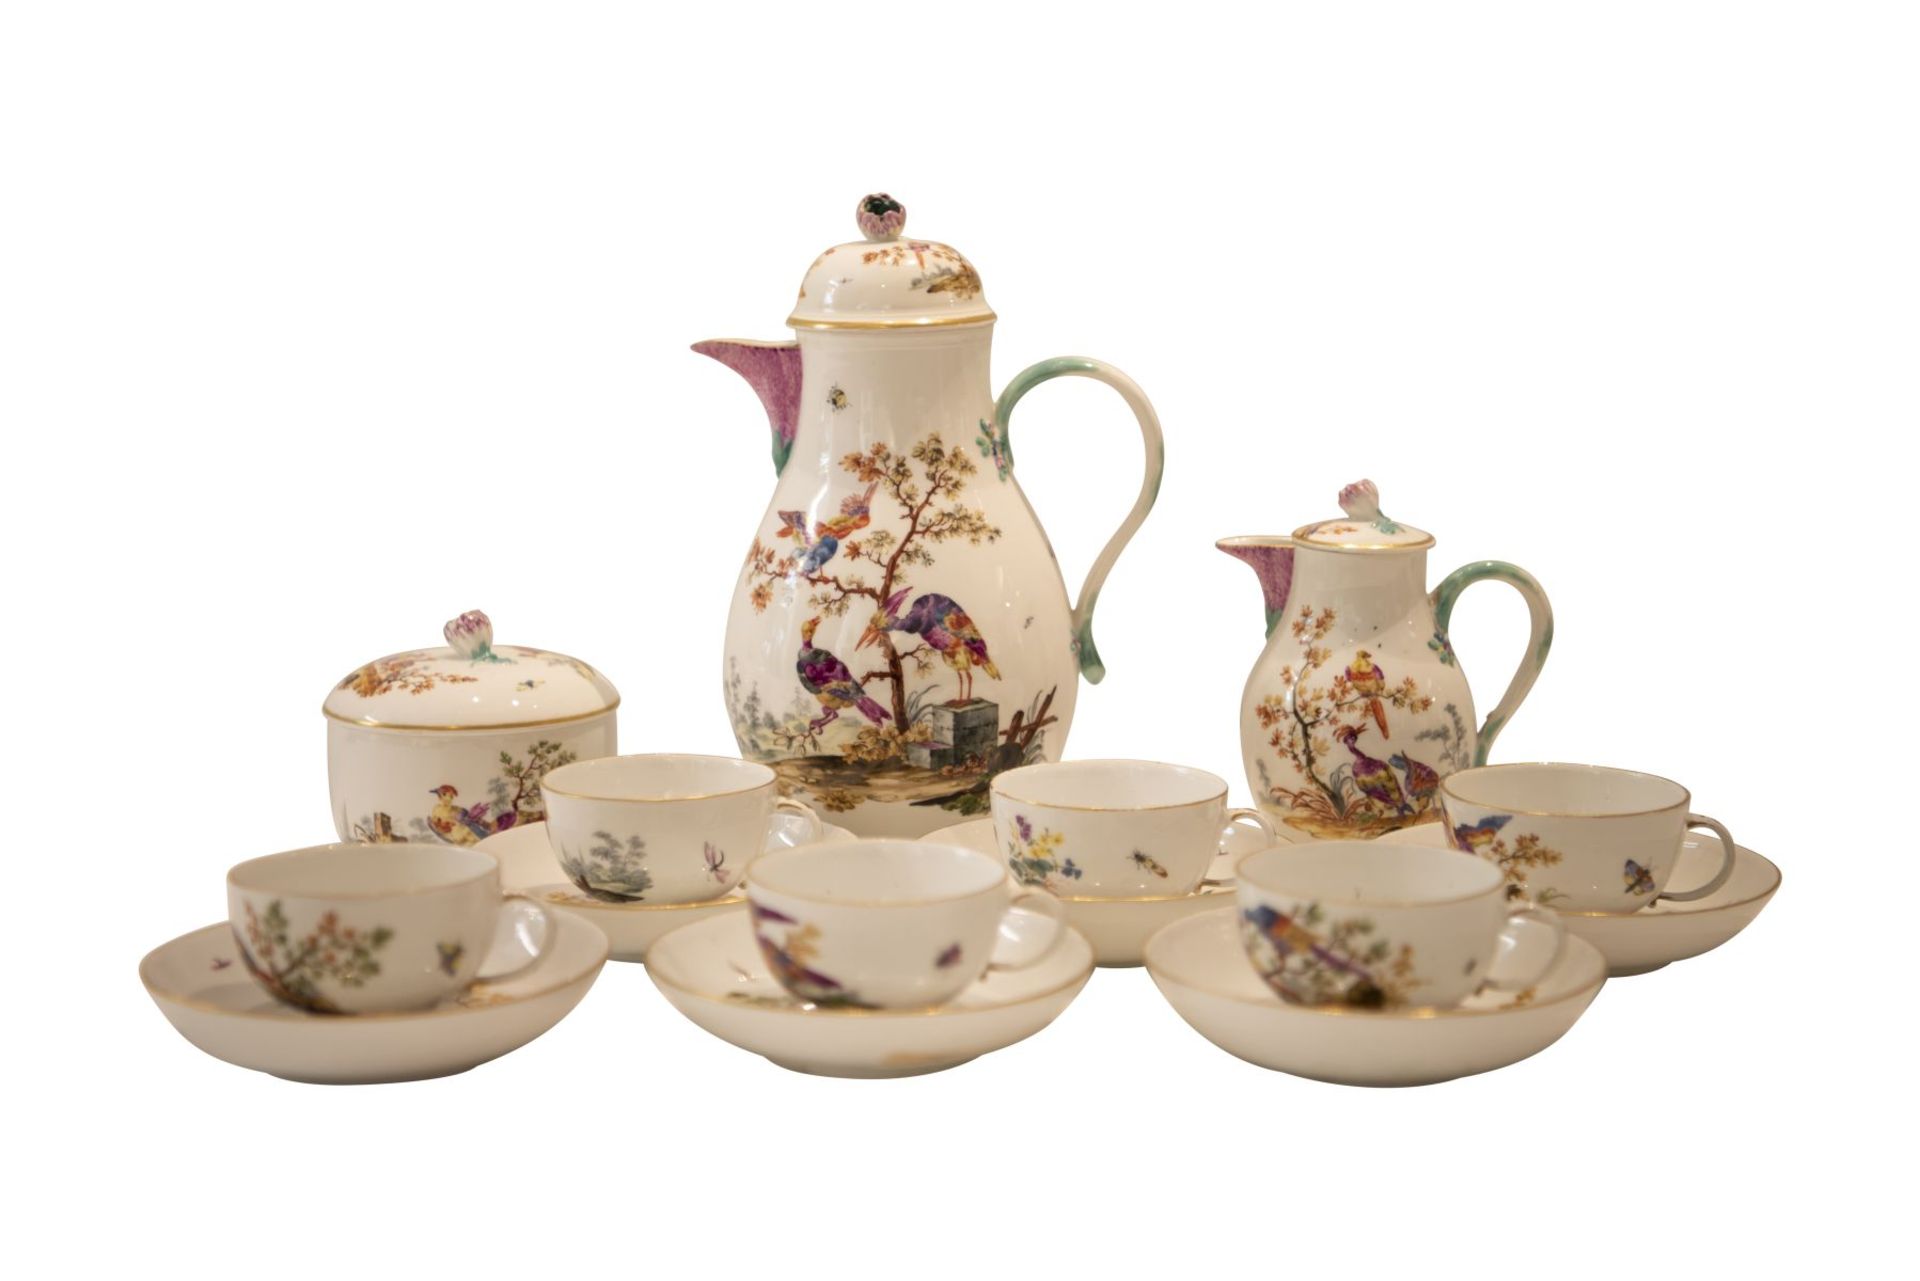 9 piece porcelain service Meissen around 1763 - Image 2 of 12